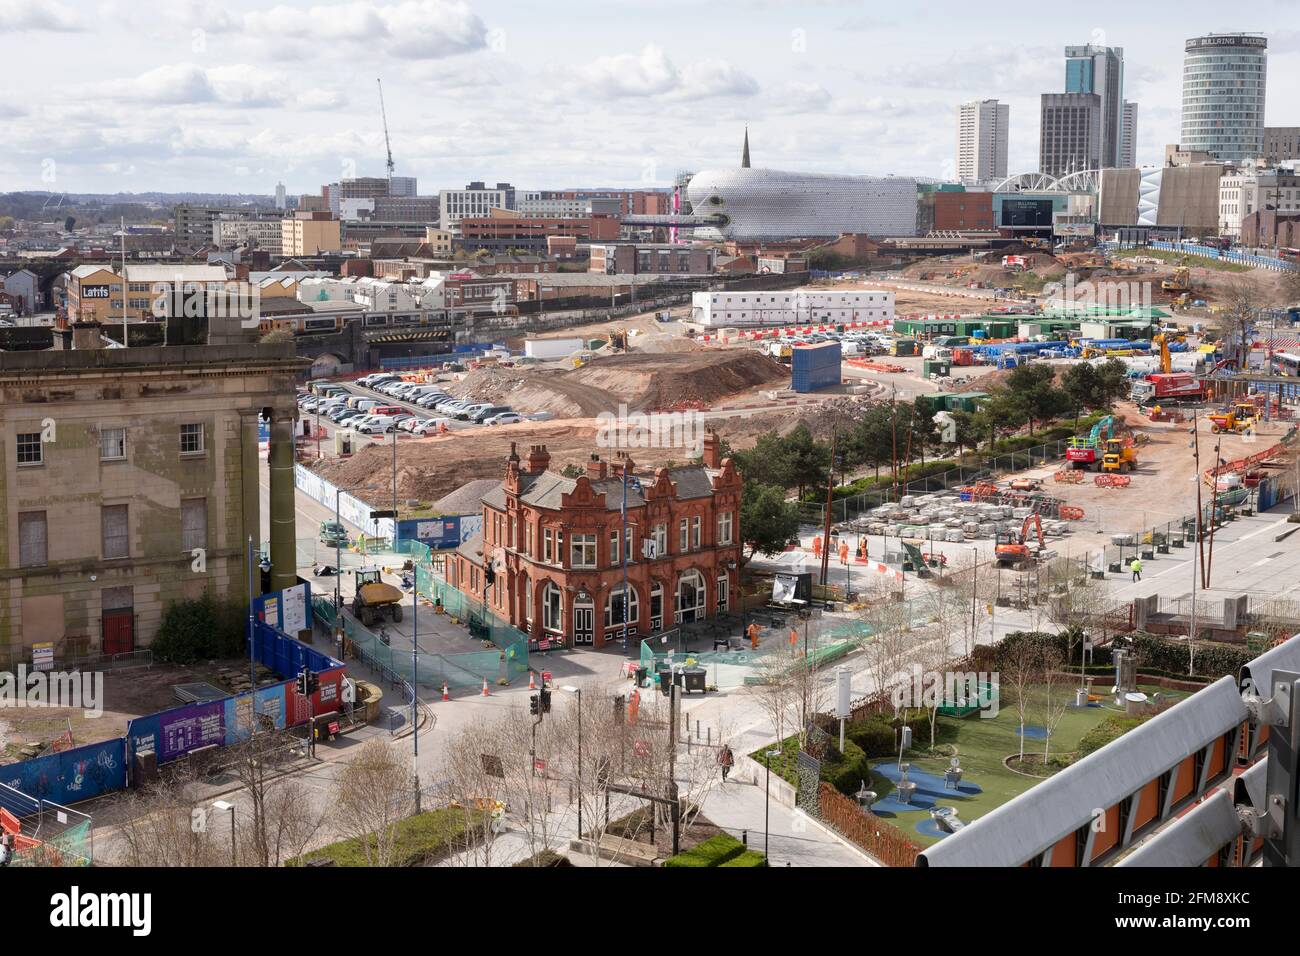 Die HS2-Baustelle in Birmingham. Der Bahnhof Curzon Street befindet sich auf der linken Seite. Stockfoto